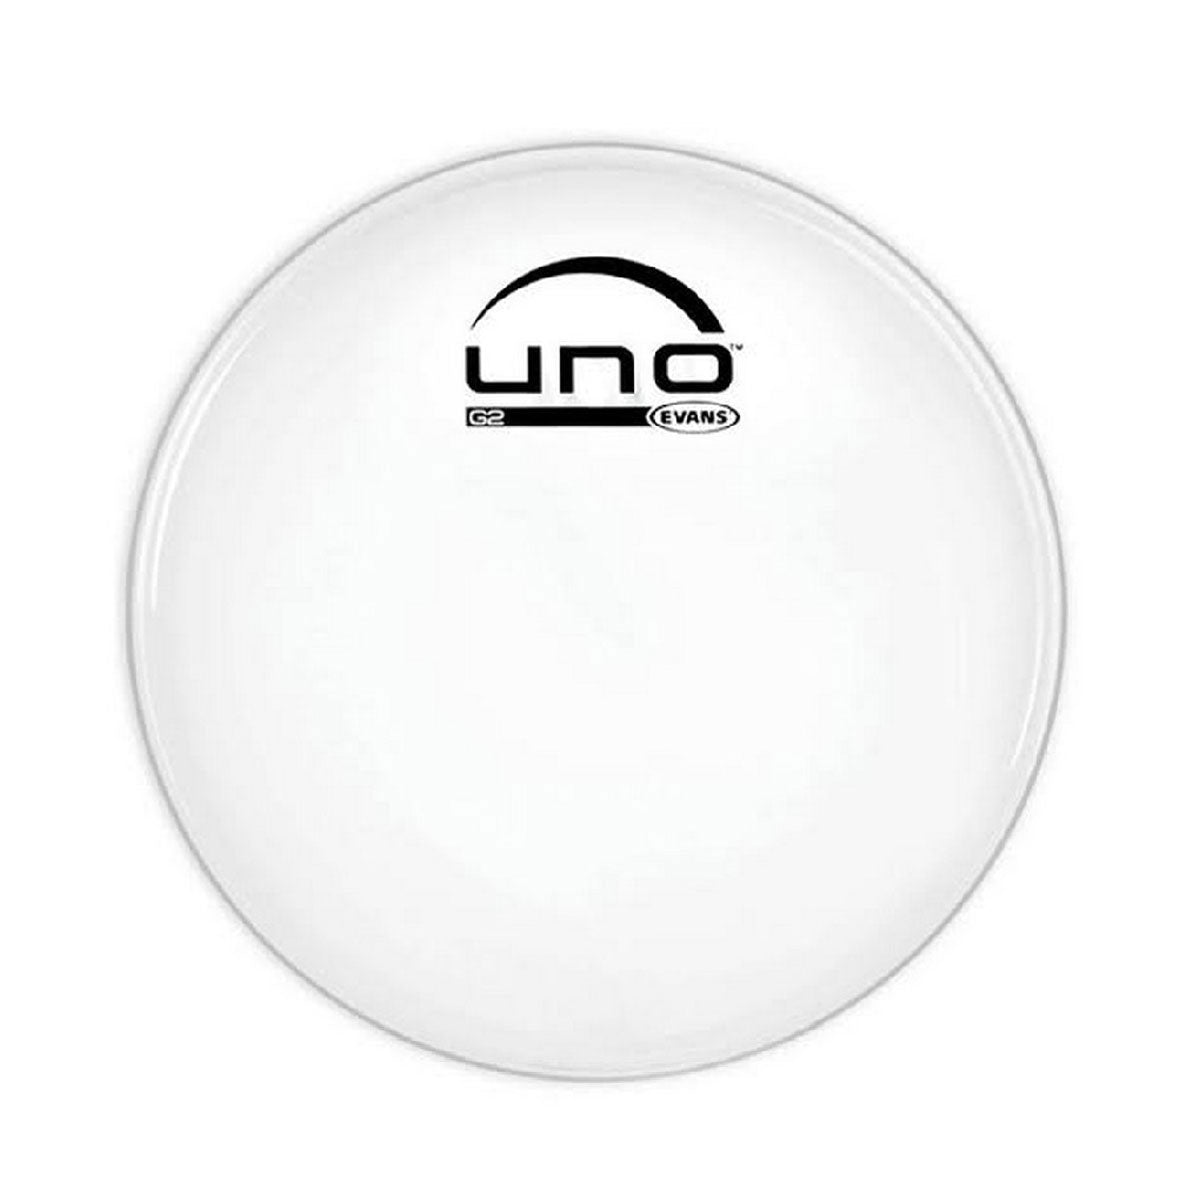 Evans Uno UB12G2 G2 Coated 12" Drumhead